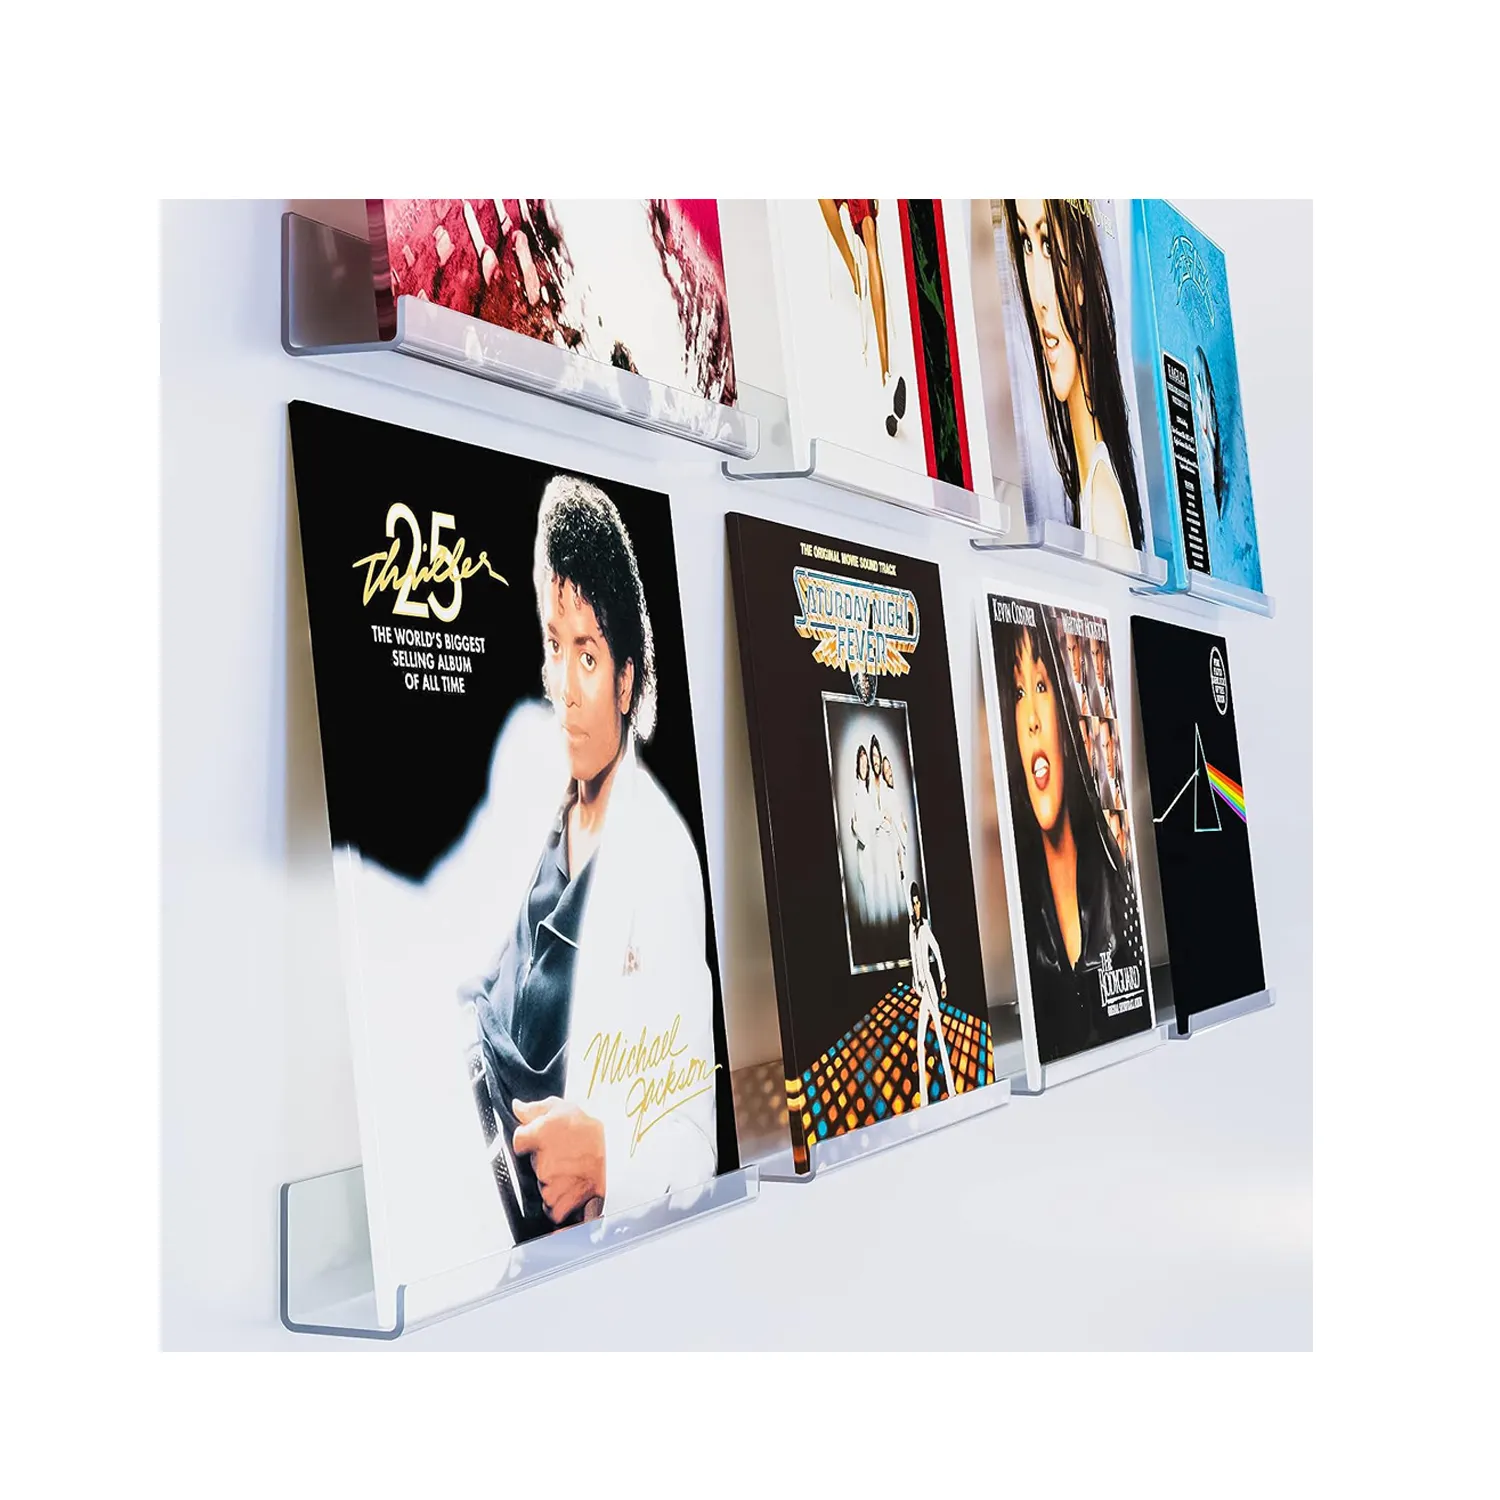 8er Pack 12 Zoll klares Schallplatten regal Wand halterung Album rahmen für Schallplatten zur Anzeige eines einzigartigen Dekors für Musik aufzeichnungen Coll